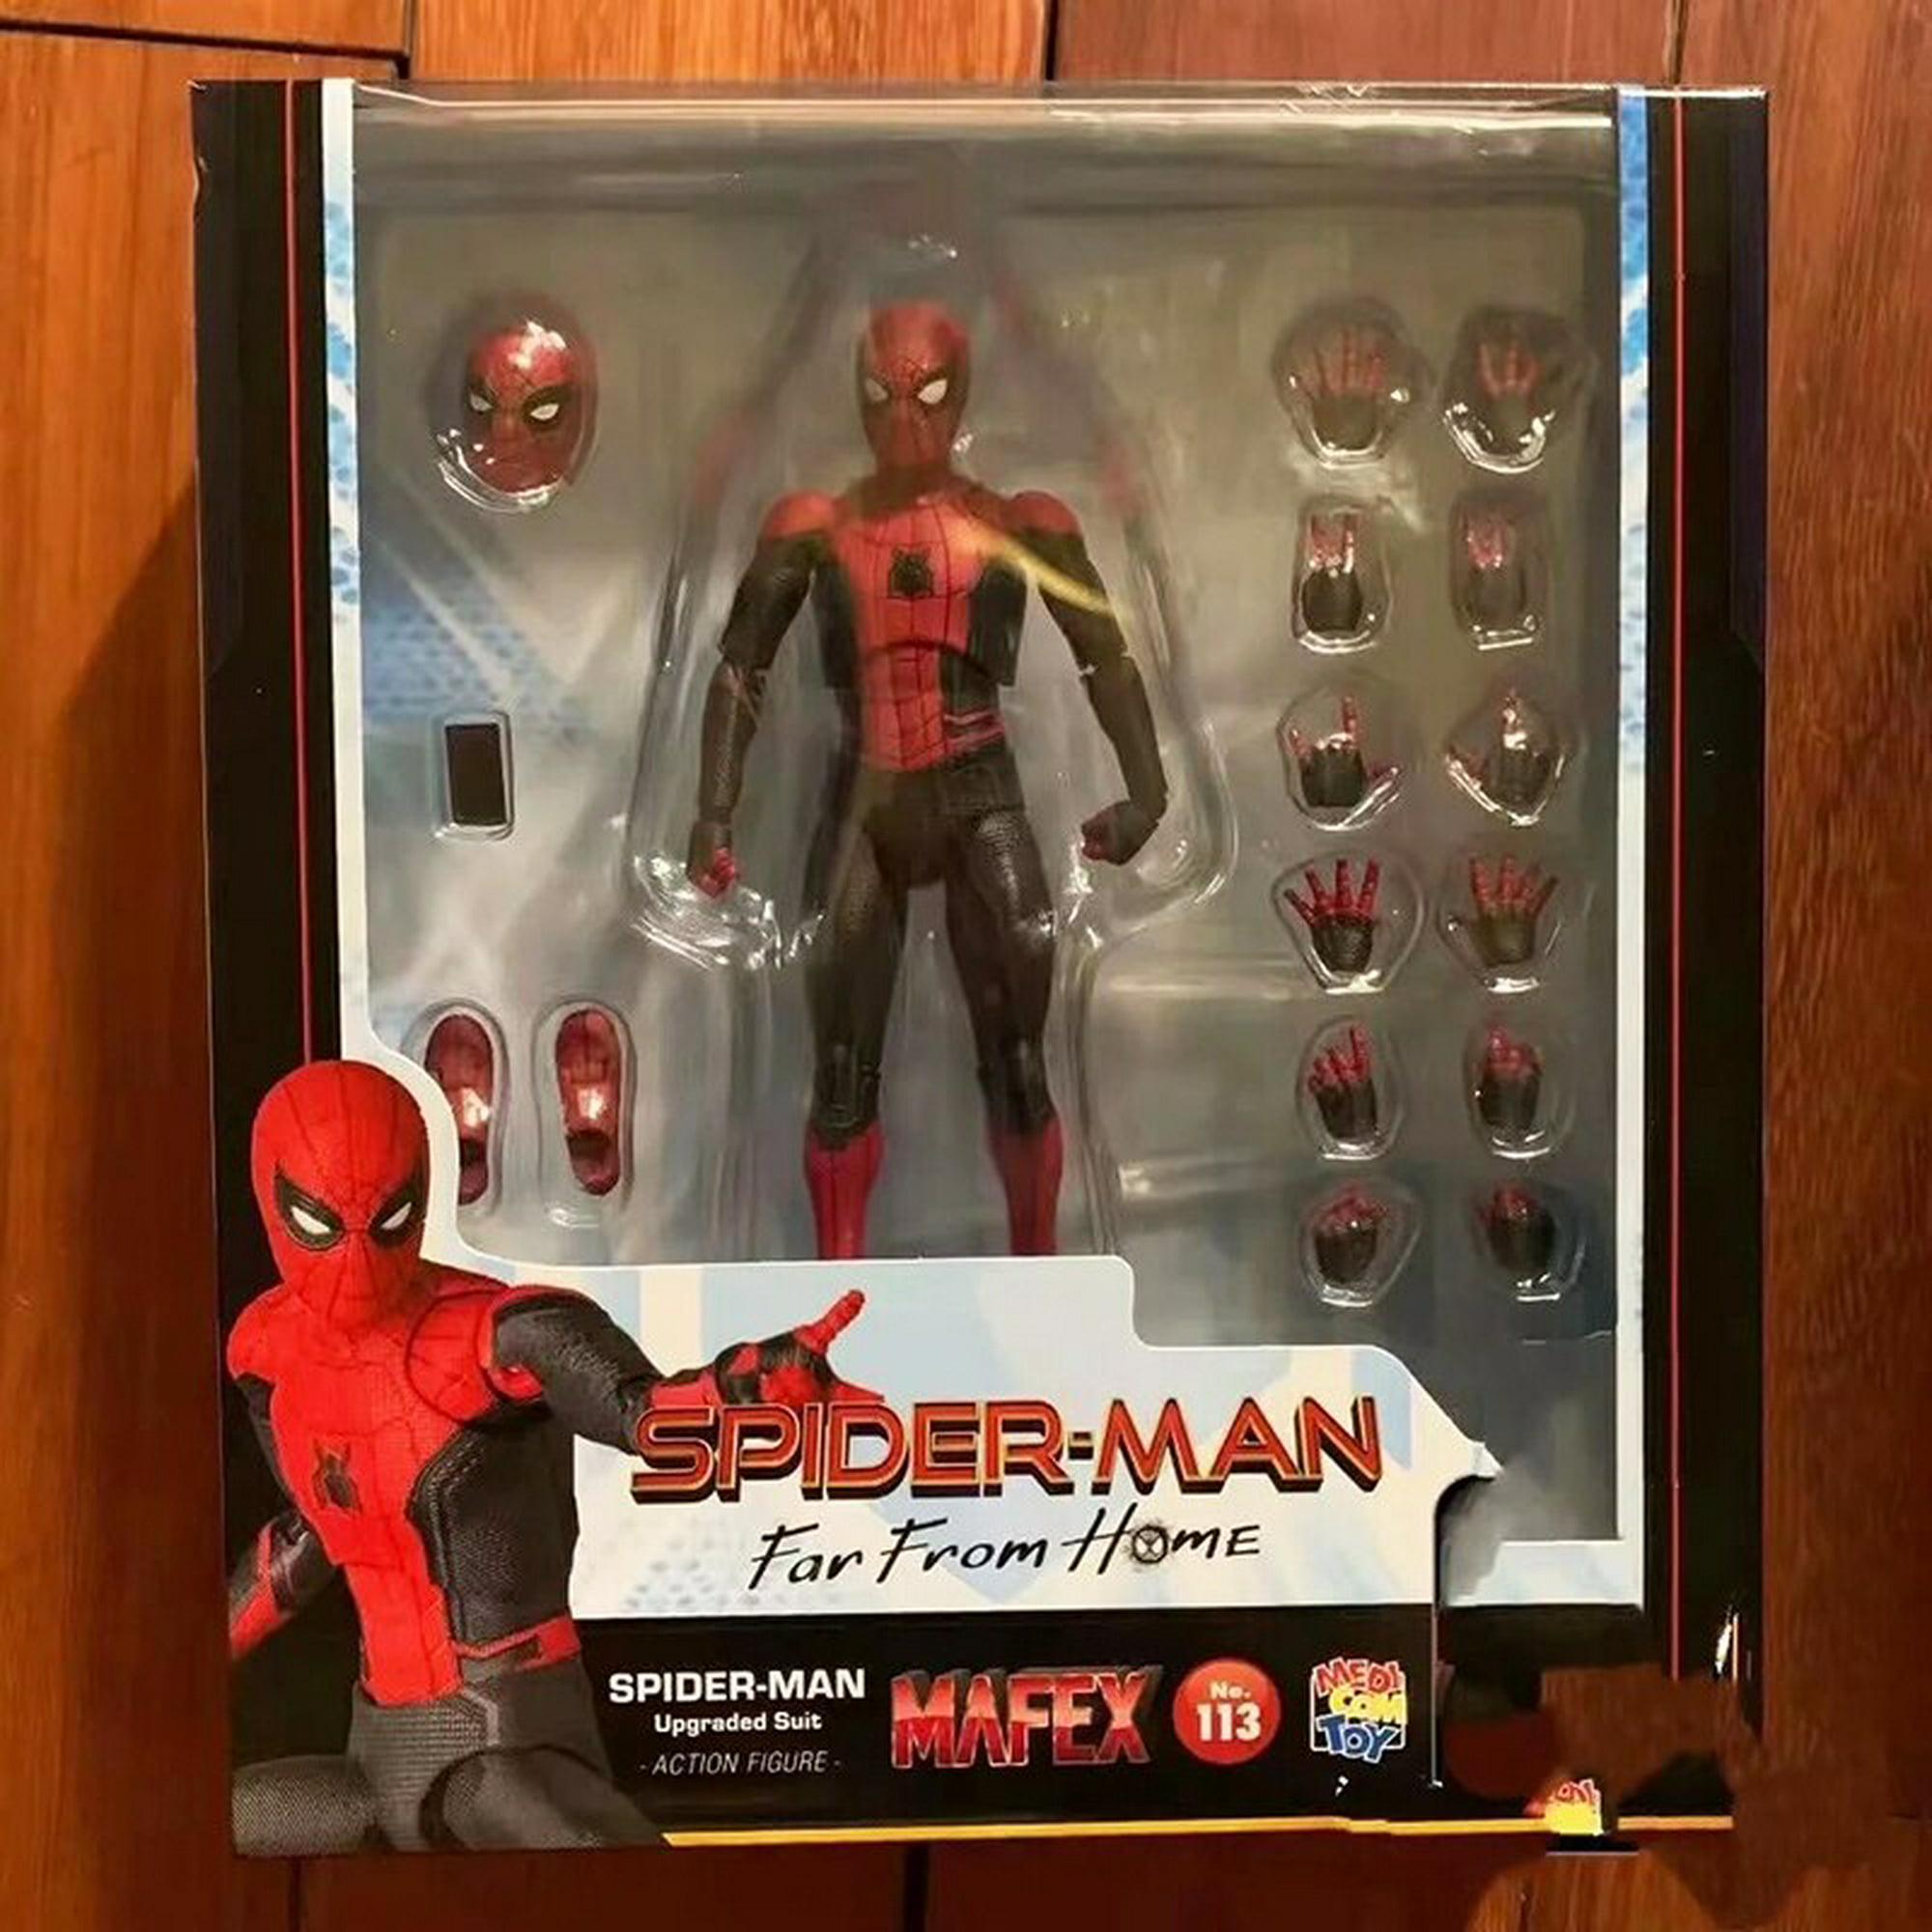 Figuras de superhéroes de Marvel, Spiderman, juguetes para niños, 15cm  LIUWENJING unisex